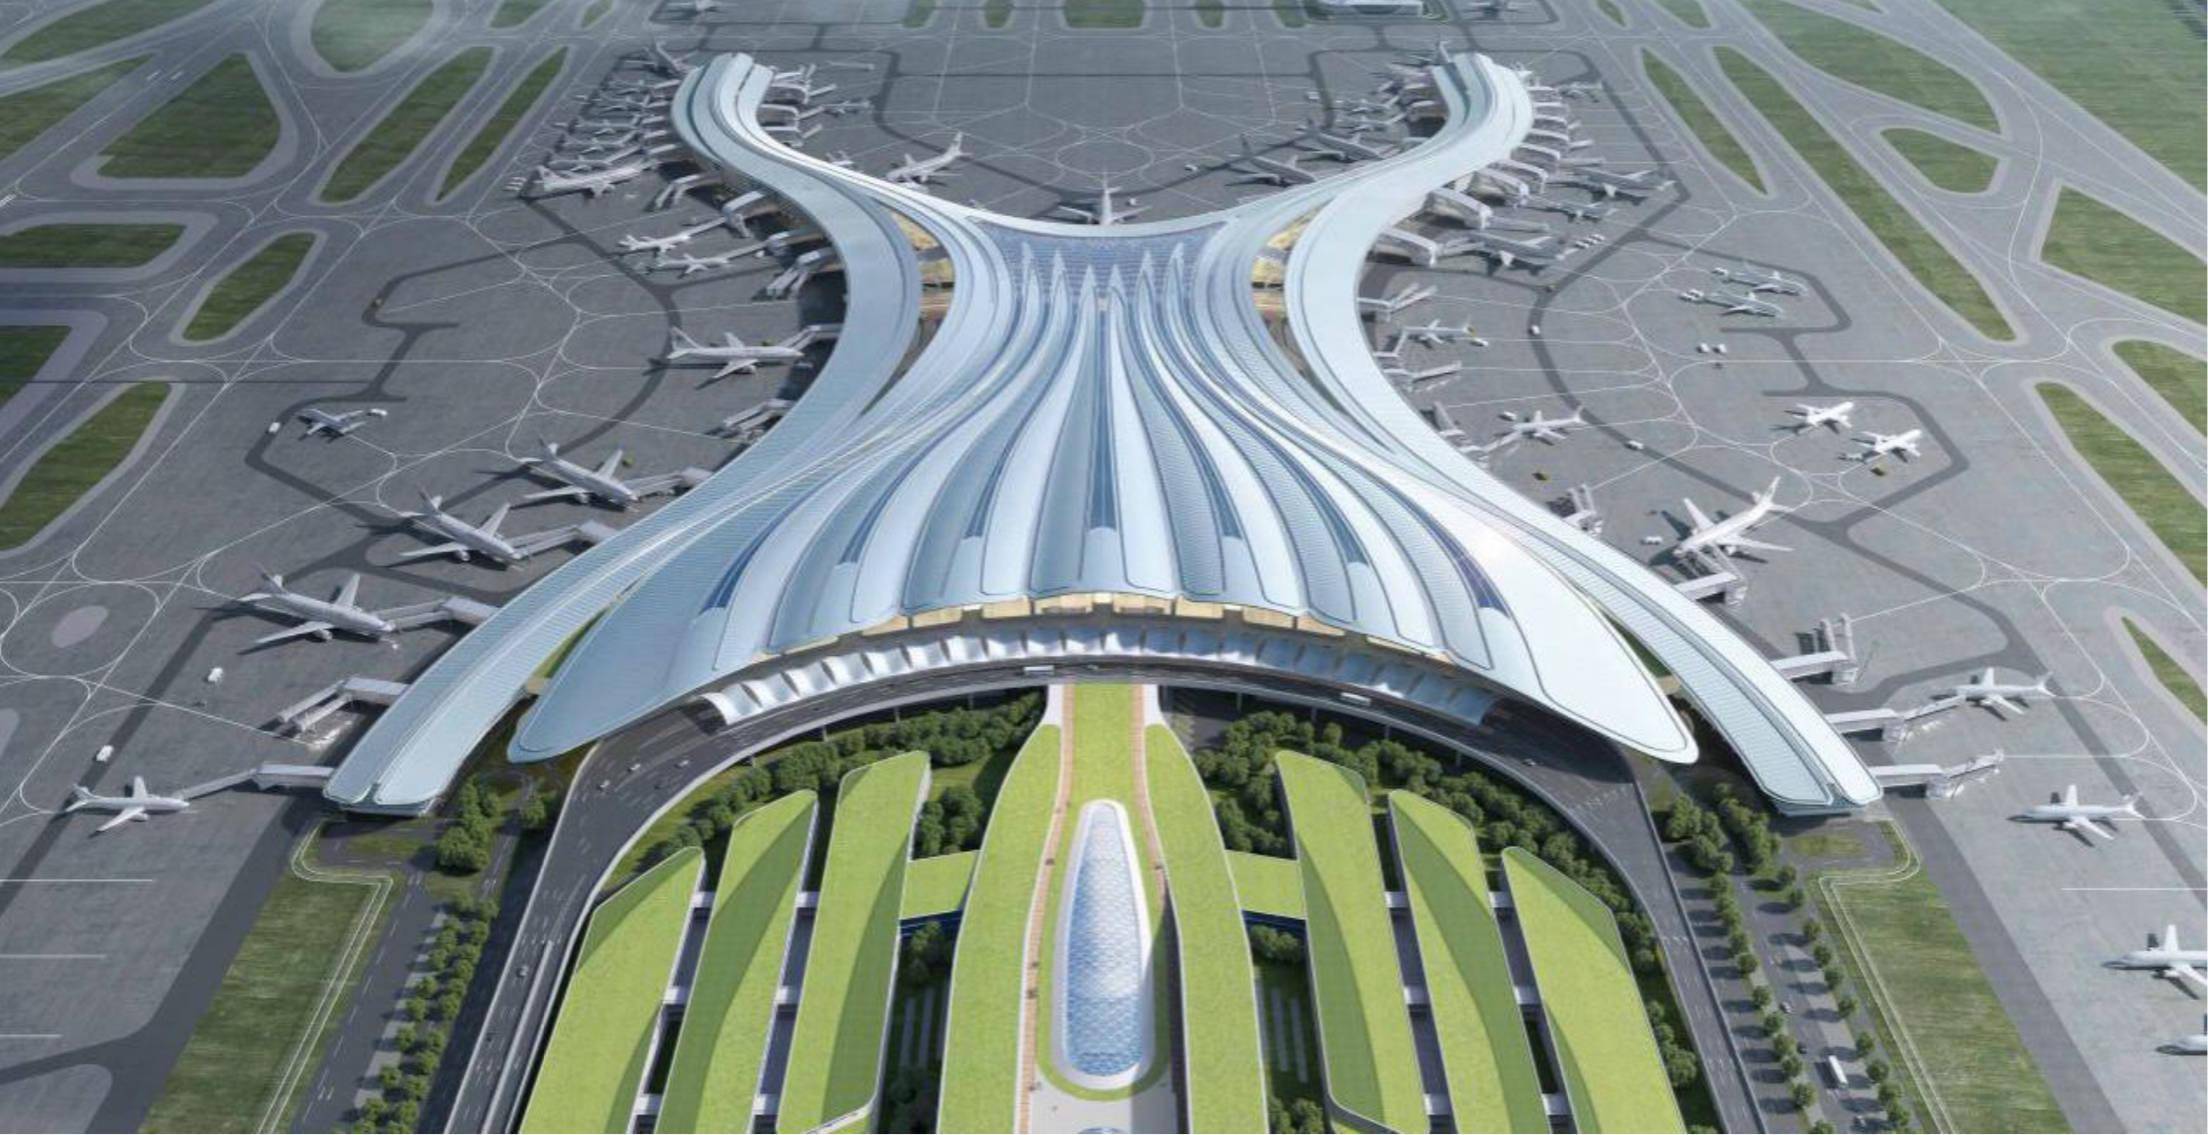 兰州中川国际机场三期扩建工程航站楼工程混凝土主体结构提前33天实现全面封顶